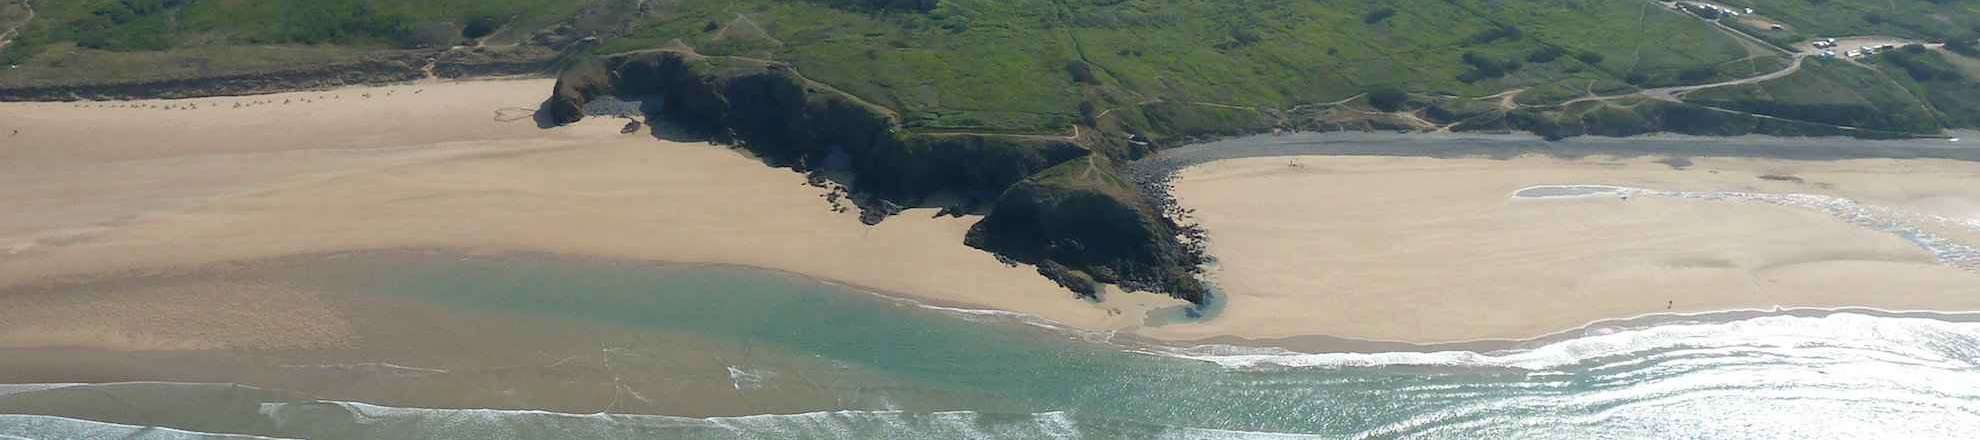 Die Strände Lostmarc'h und La Palue auf der Presqu'île de Crozon gehören zu den bekanntesten Surfspots der Bretagne